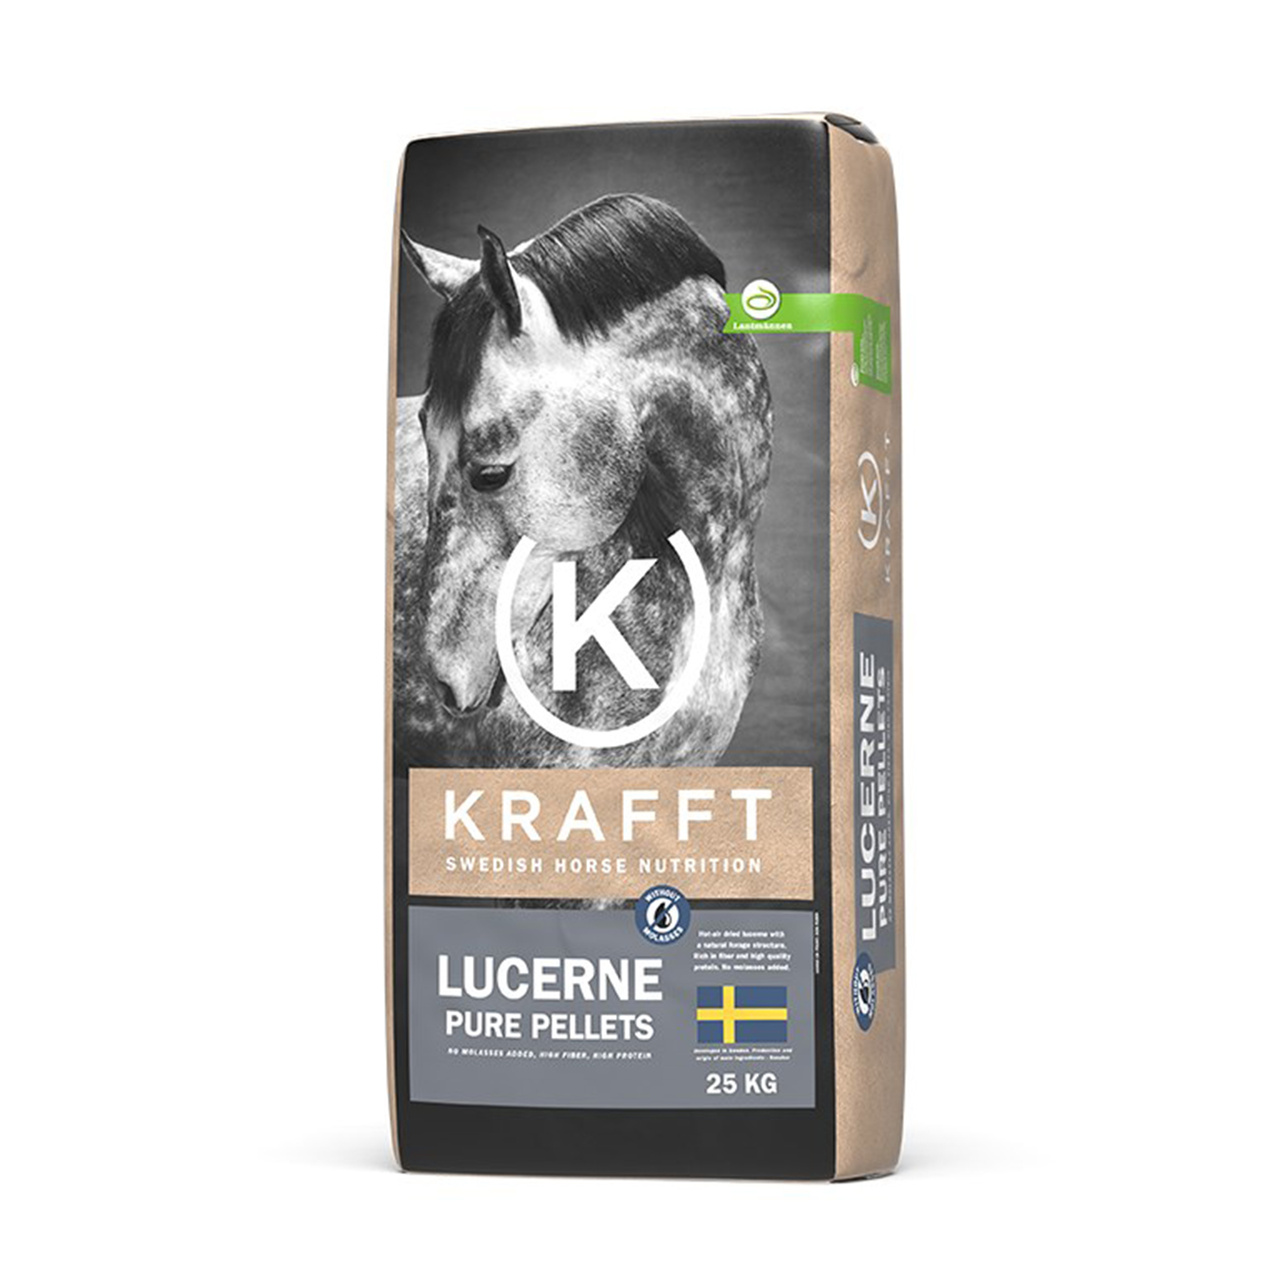 KRAFFT Lucerne pure pellets 25 kg